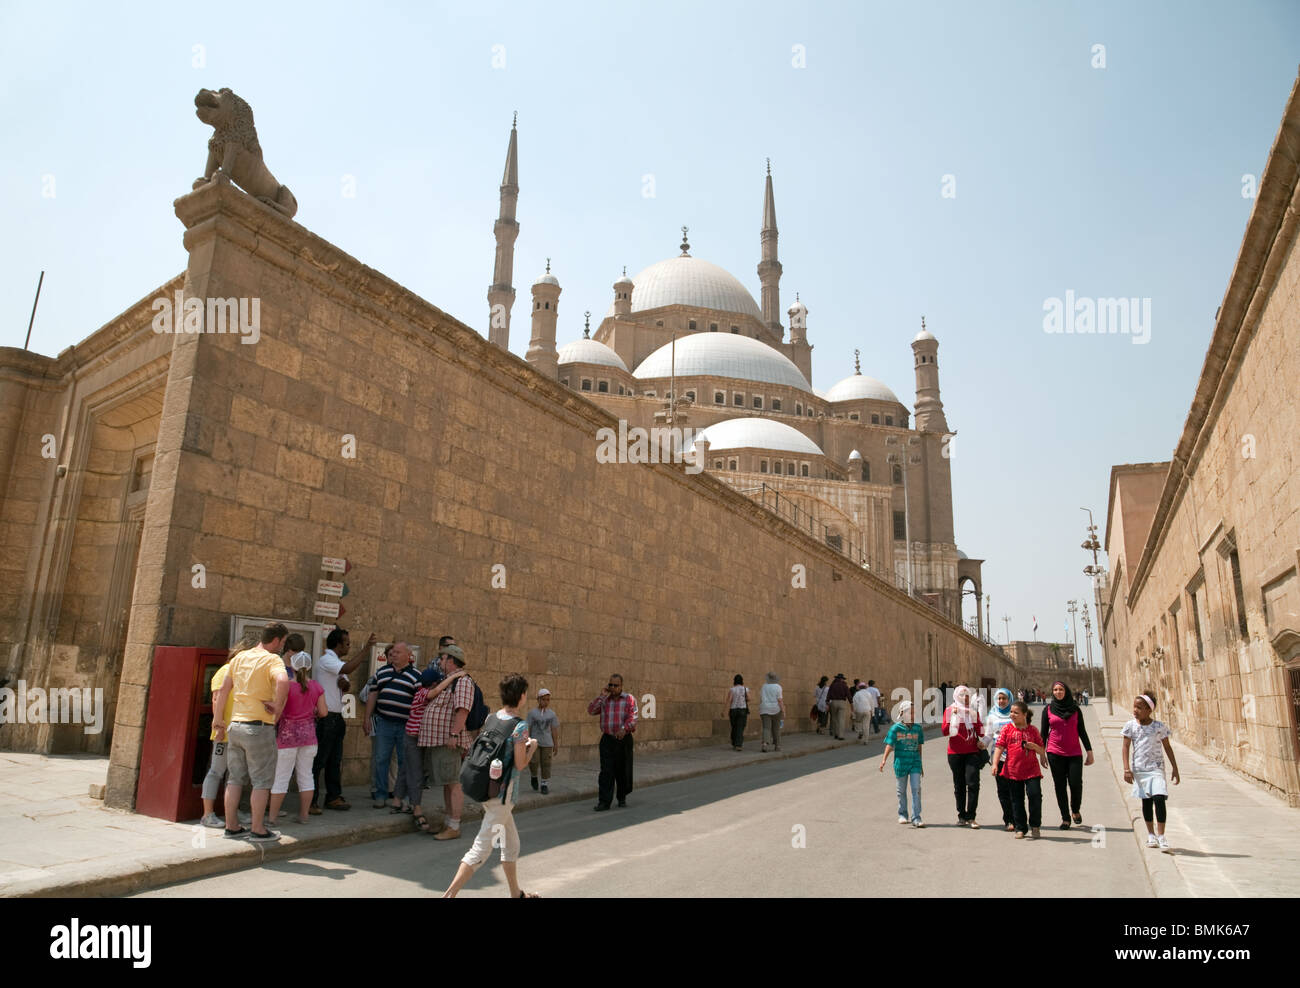 Los turistas occidentales se mezclan con los egipcios, la mezquita de Muhammad Ali, el barrio islámico, El Cairo, Egipto Foto de stock